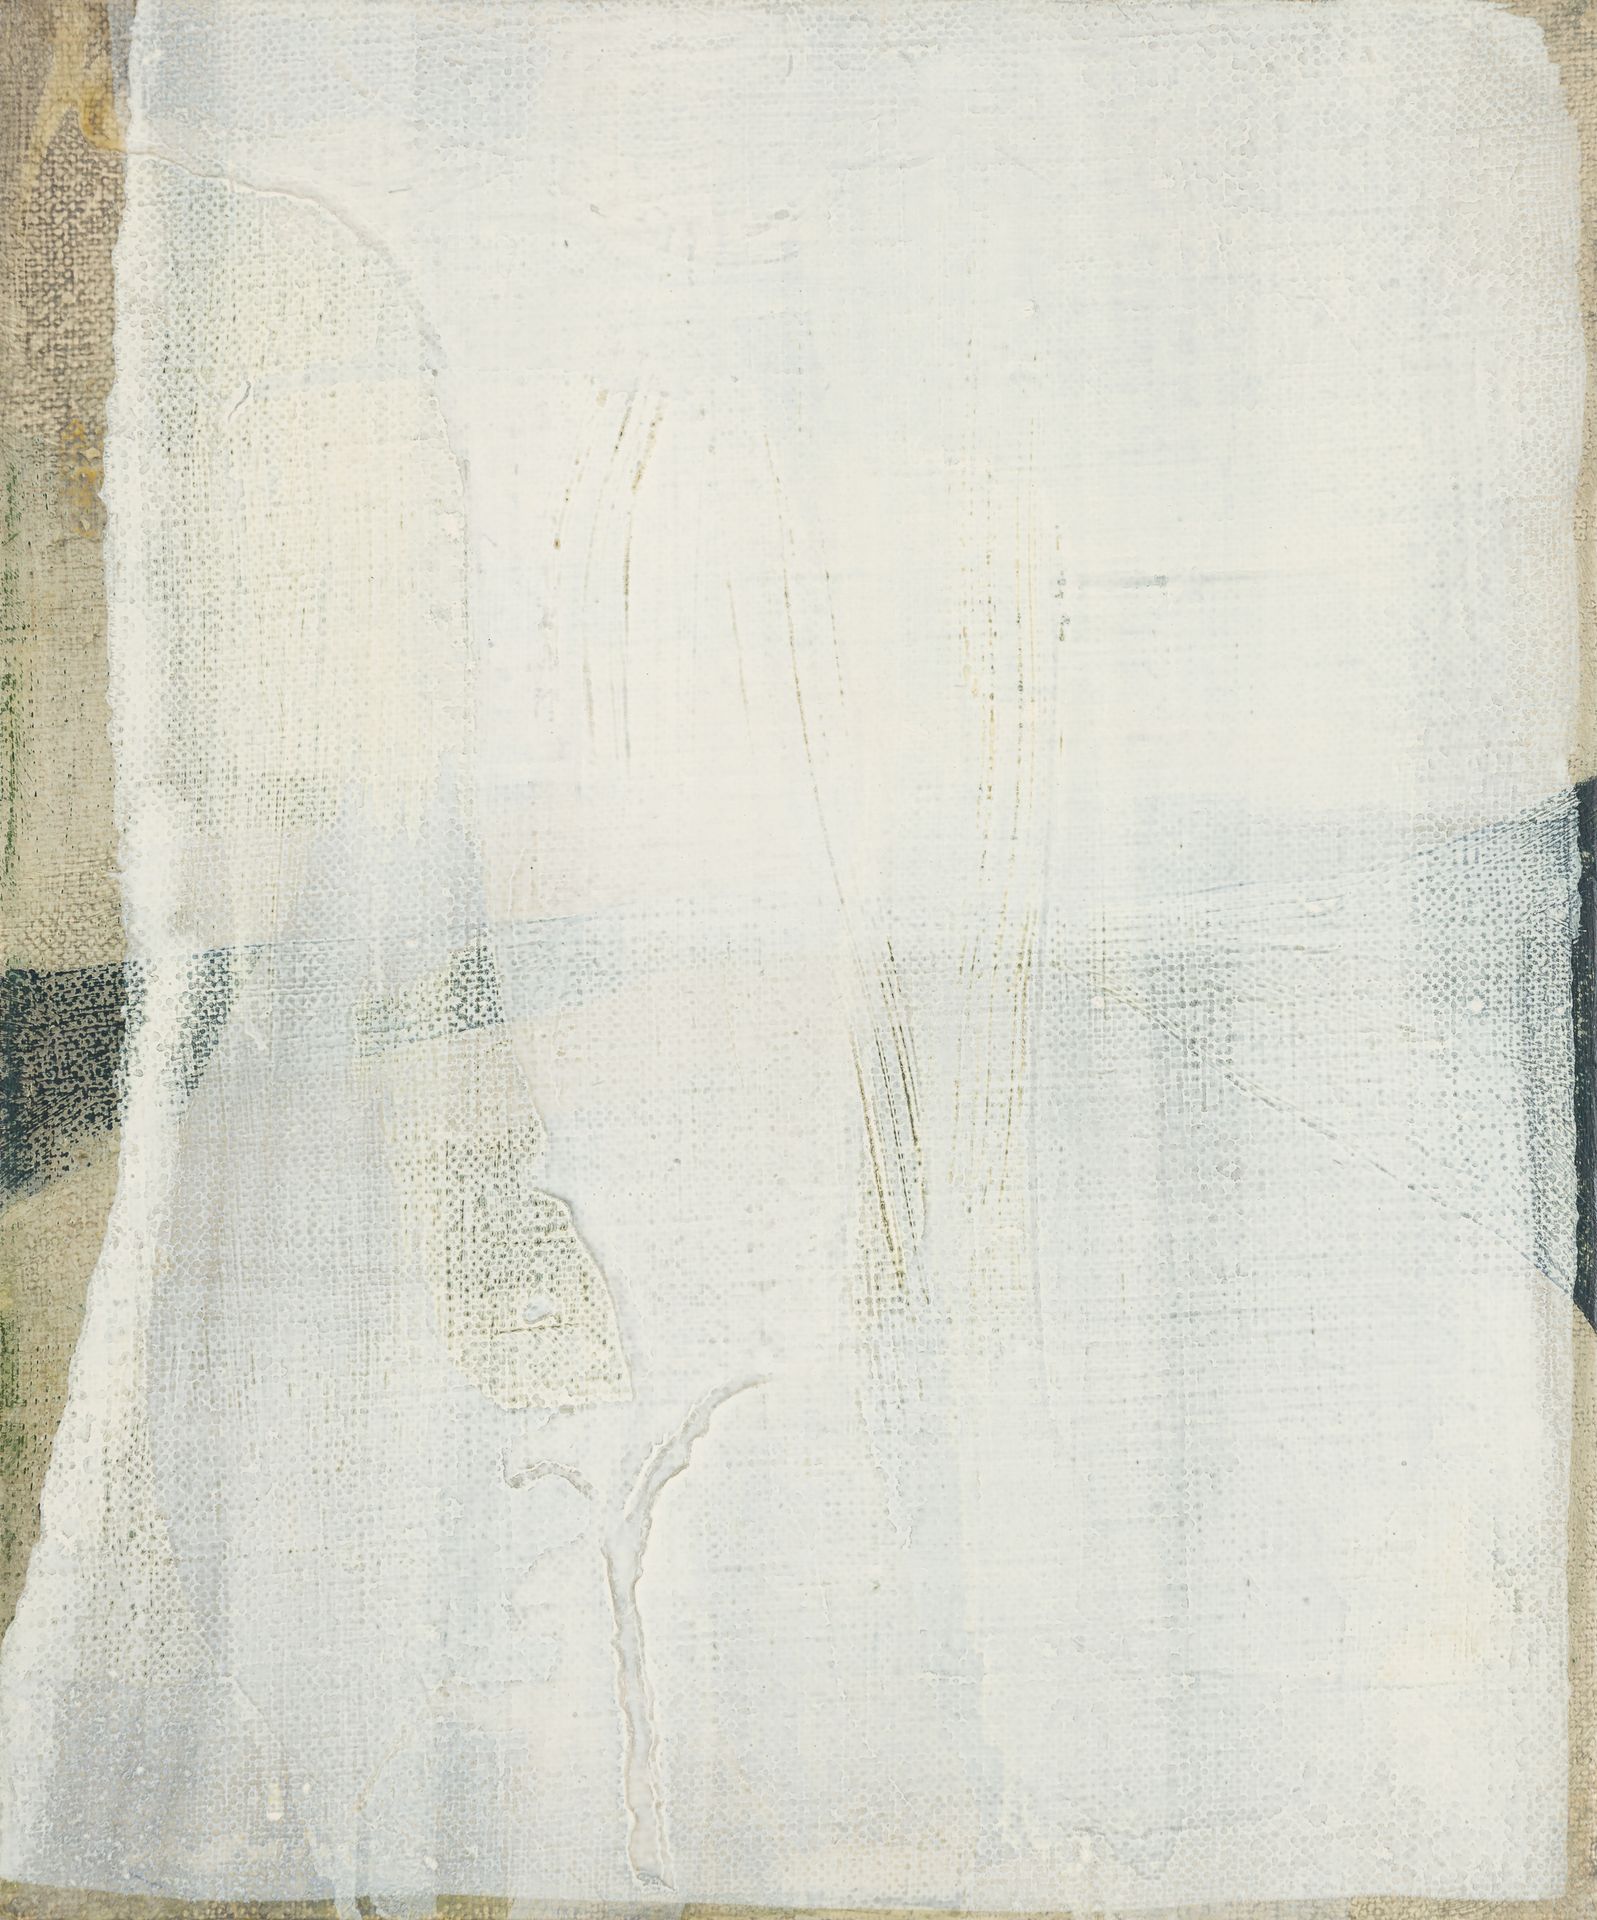 Bohatsch, Erwin Abstraction I, 1969
Huile sur toile
Signé et daté au verso
30 x &hellip;